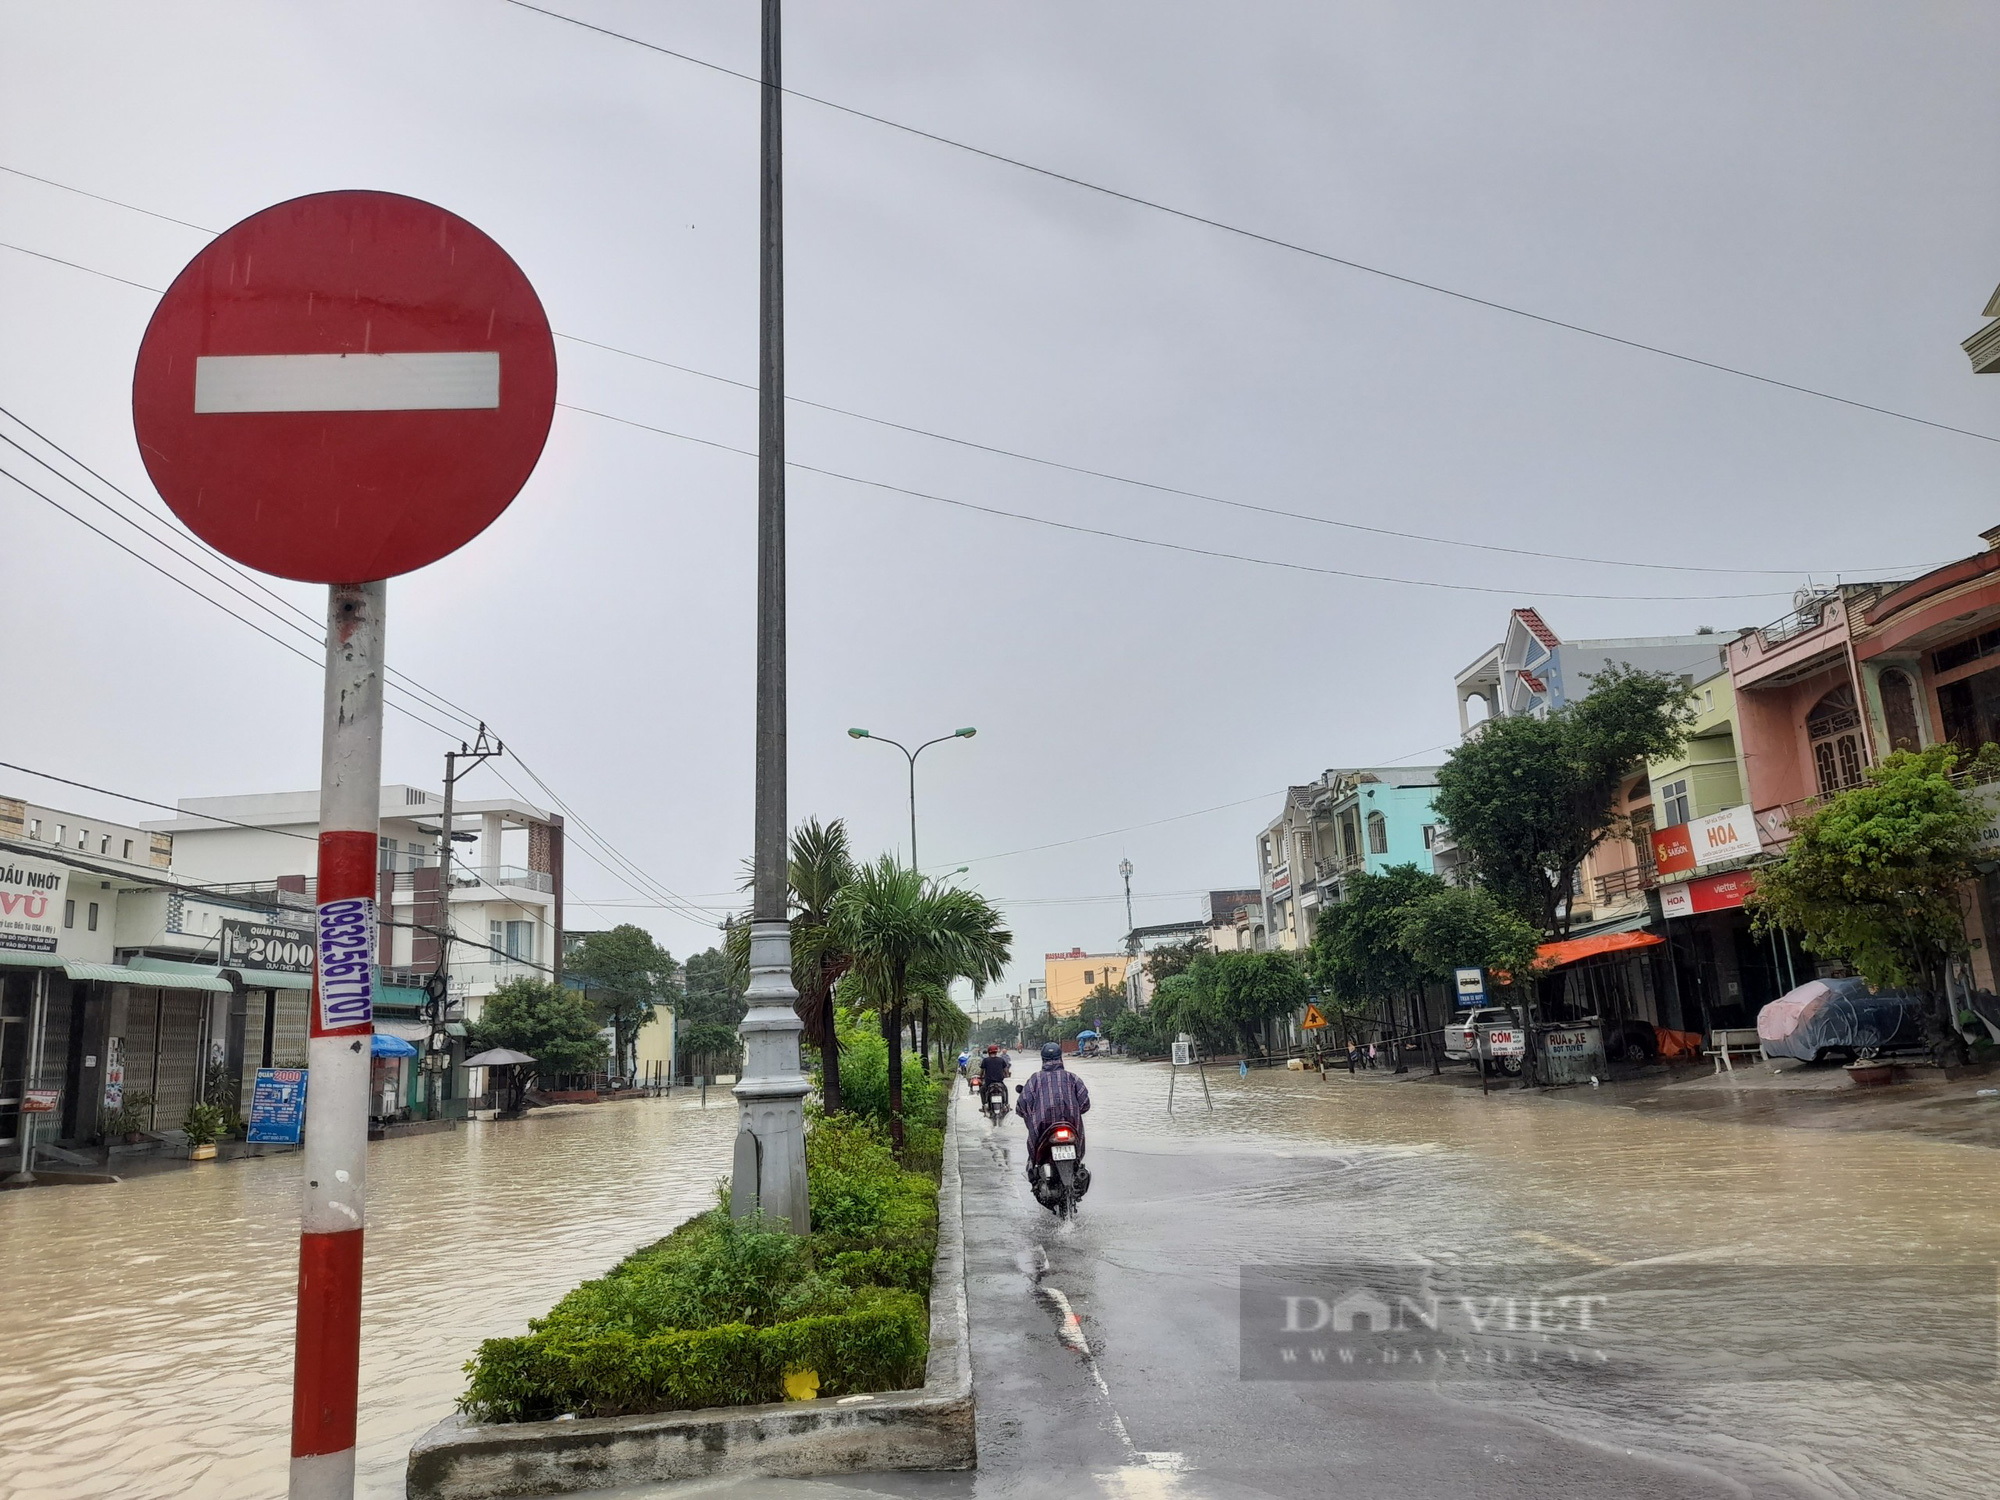 Bình Định: Quốc lộ 1 ngập nước, mố cầu Ngô La sạt lở gây chia cắt nhiều giờ ở huyện miền núi - Ảnh 8.